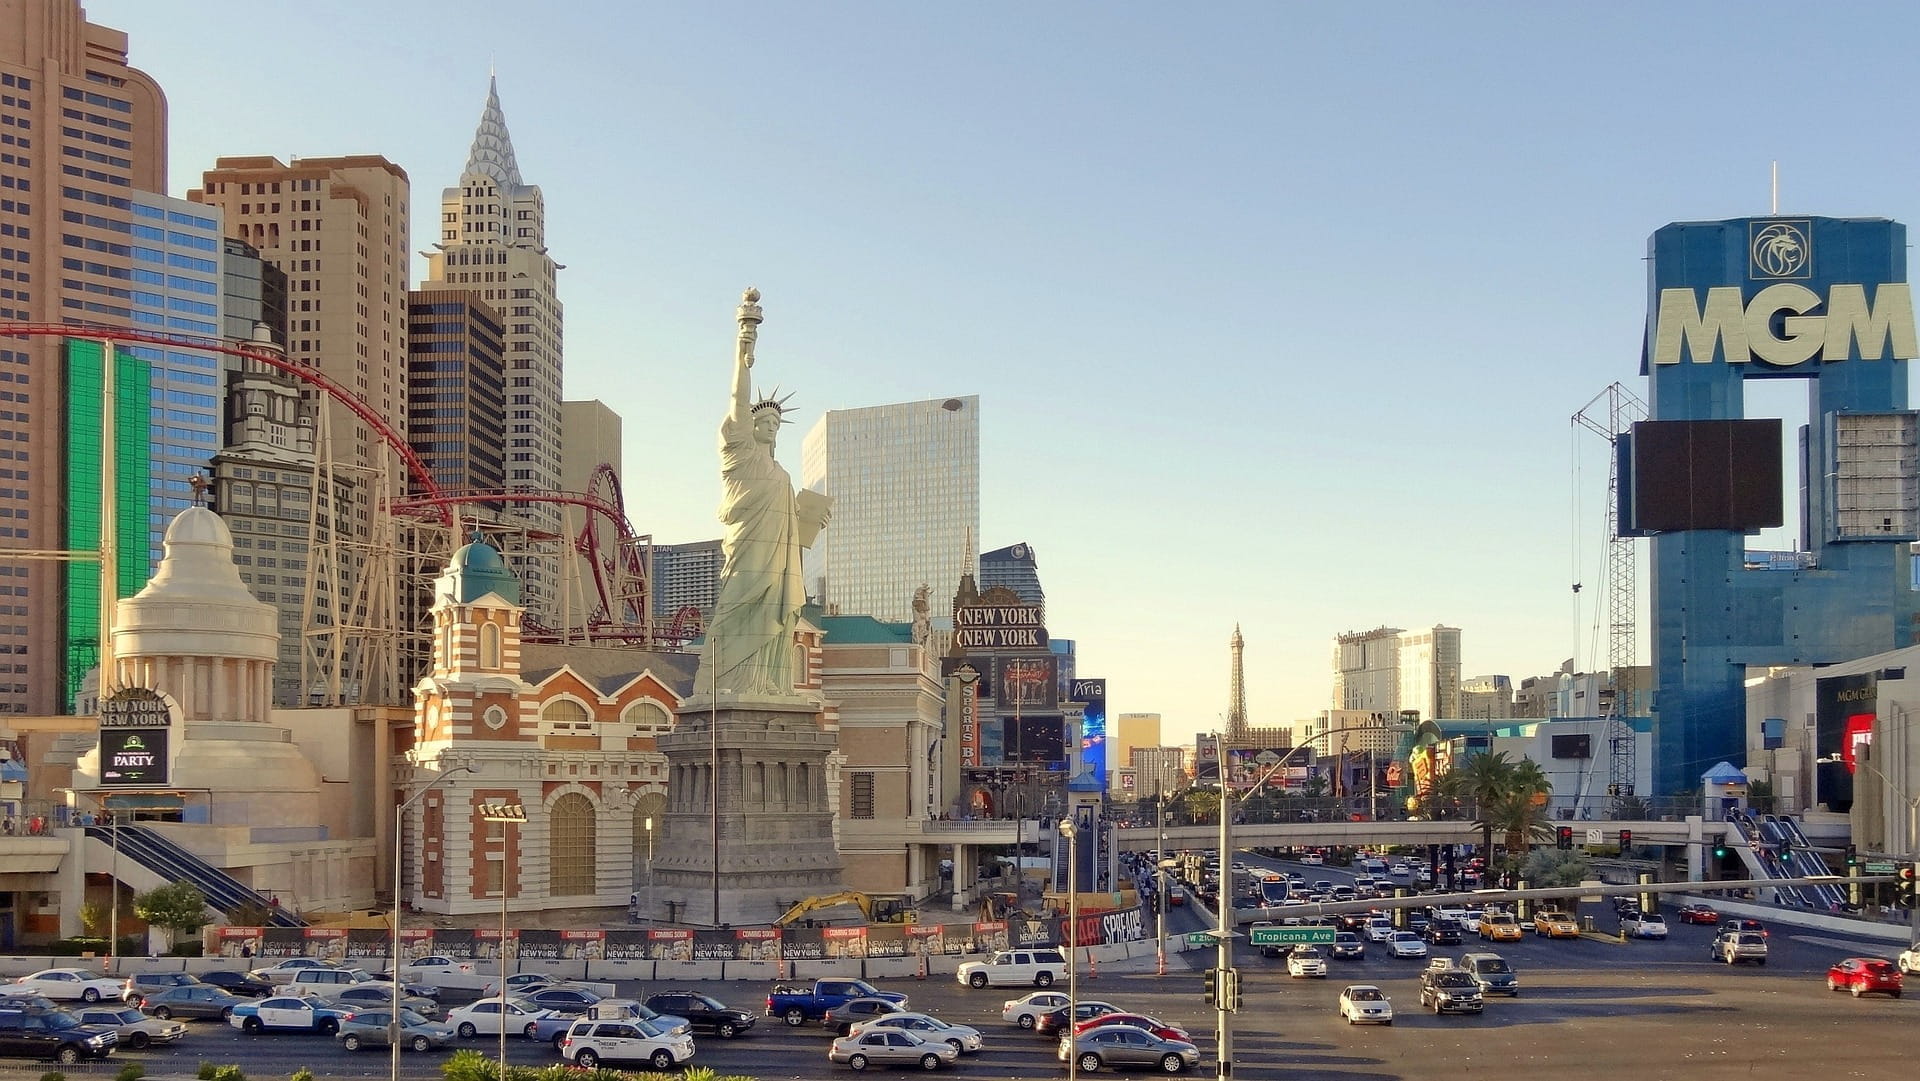 Las Vegas Strip am Tag mit vielen Autos und MGM-Gebäude.